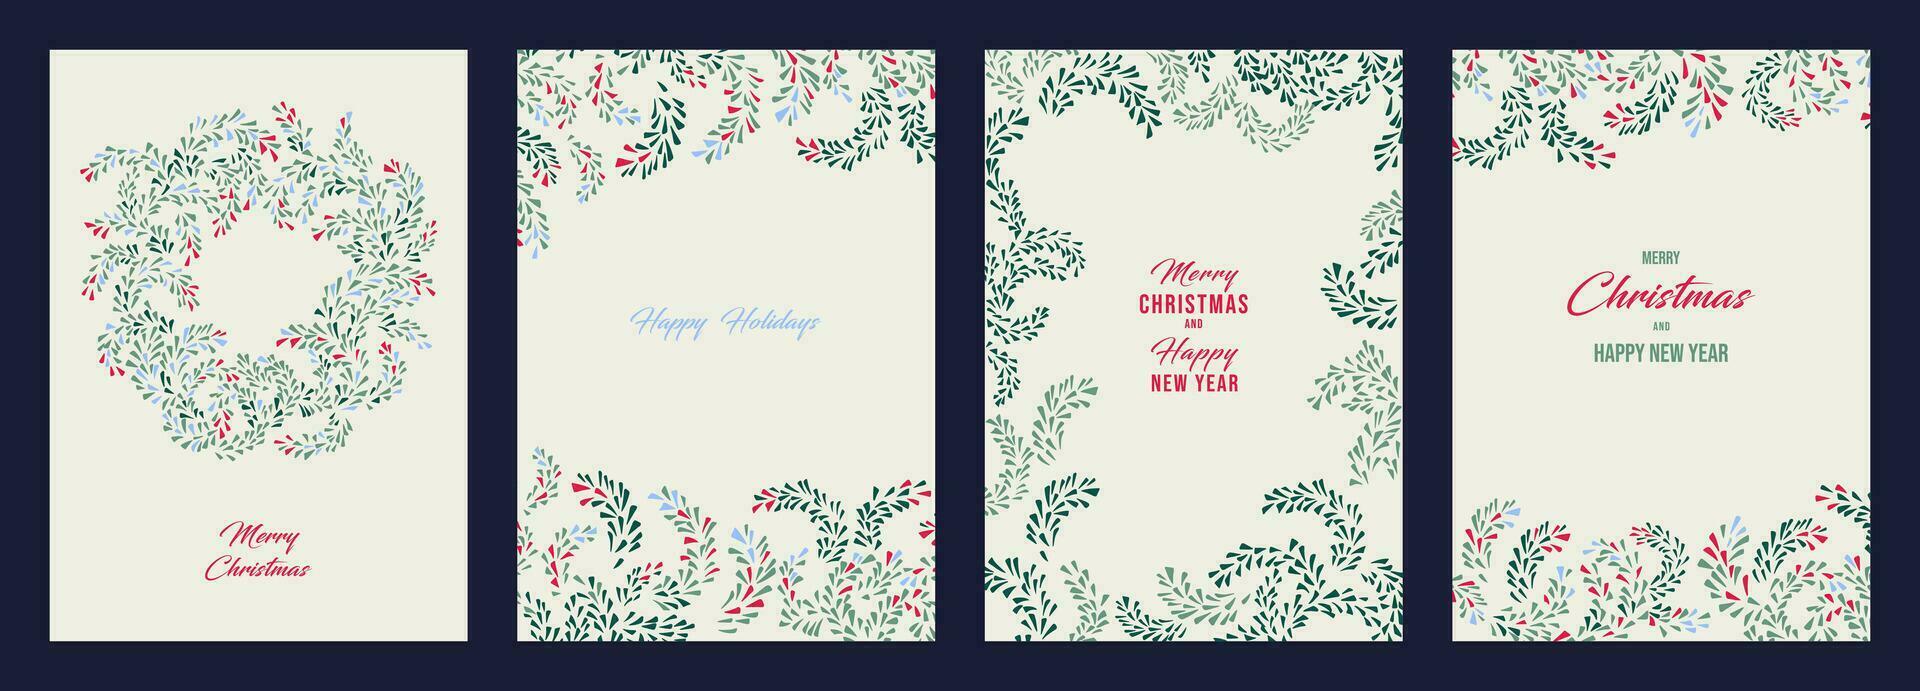 Weihnachten Vorlagen mit Kopieren Raum. einstellen Gruß Karten fröhlich Weihnachten, glücklich Neu Jahr mit Vektor Hand gezeichnet, abstrakt, künstlerisch Weihnachten Kranz, Universal- Blumen- rahmen, Winter Ornament